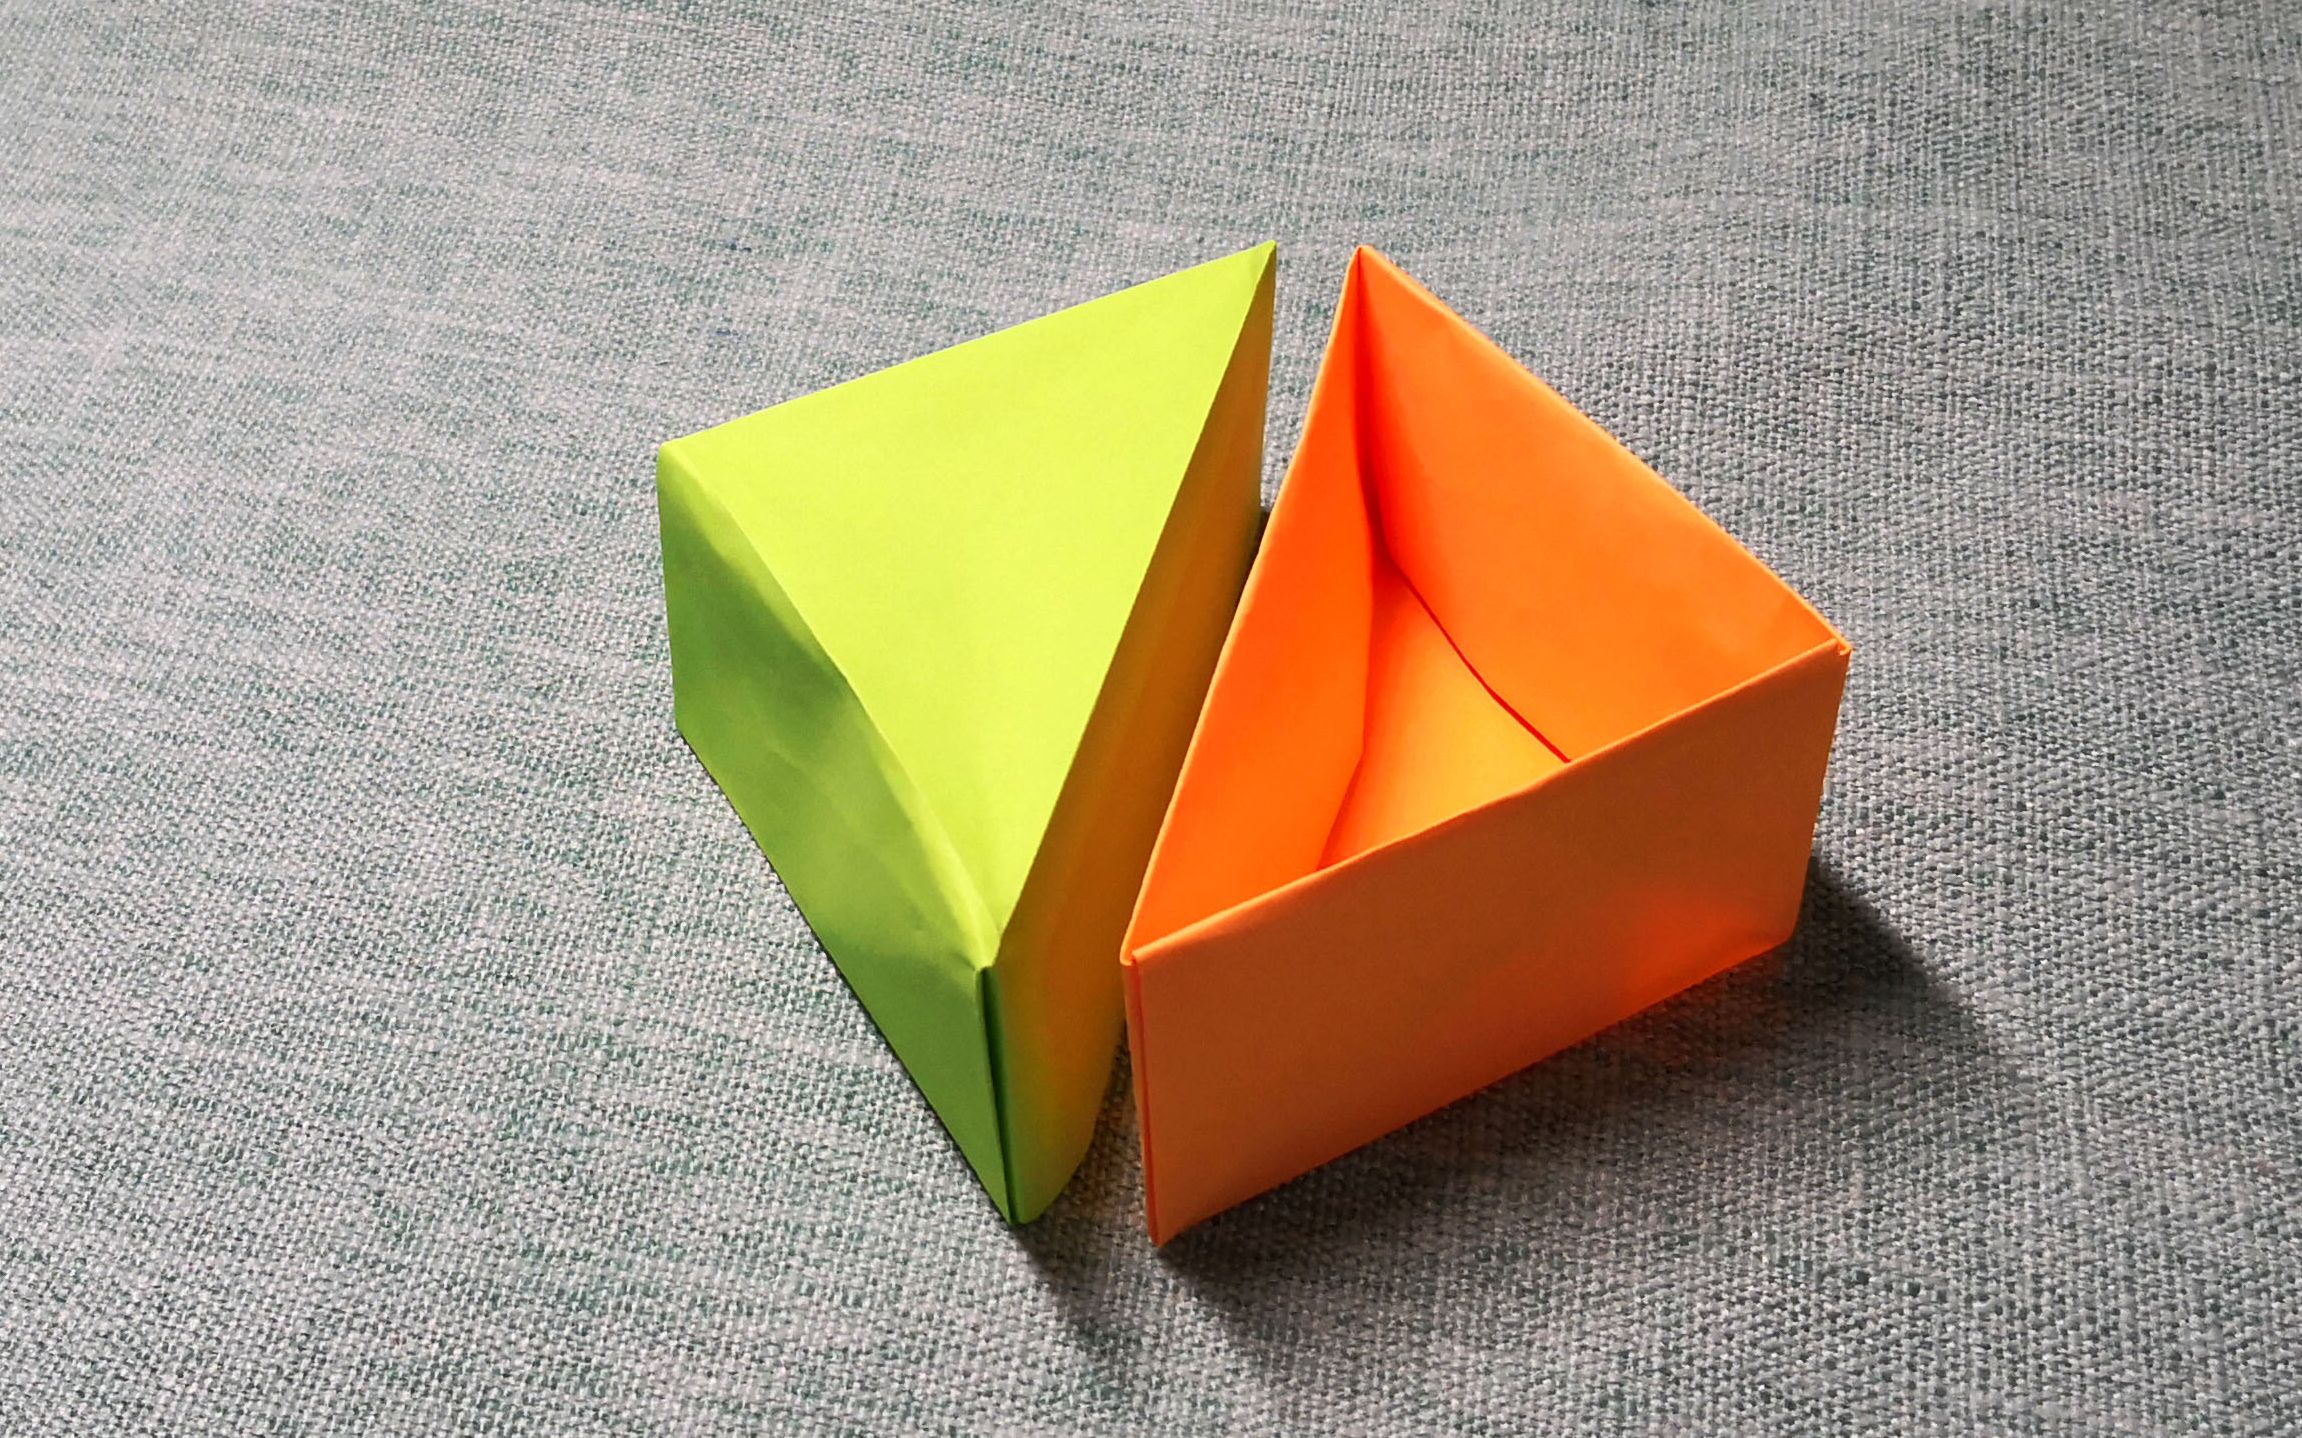 【折纸】立体三角盒子折纸详细教程,一张纸折出实用三角收纳盒